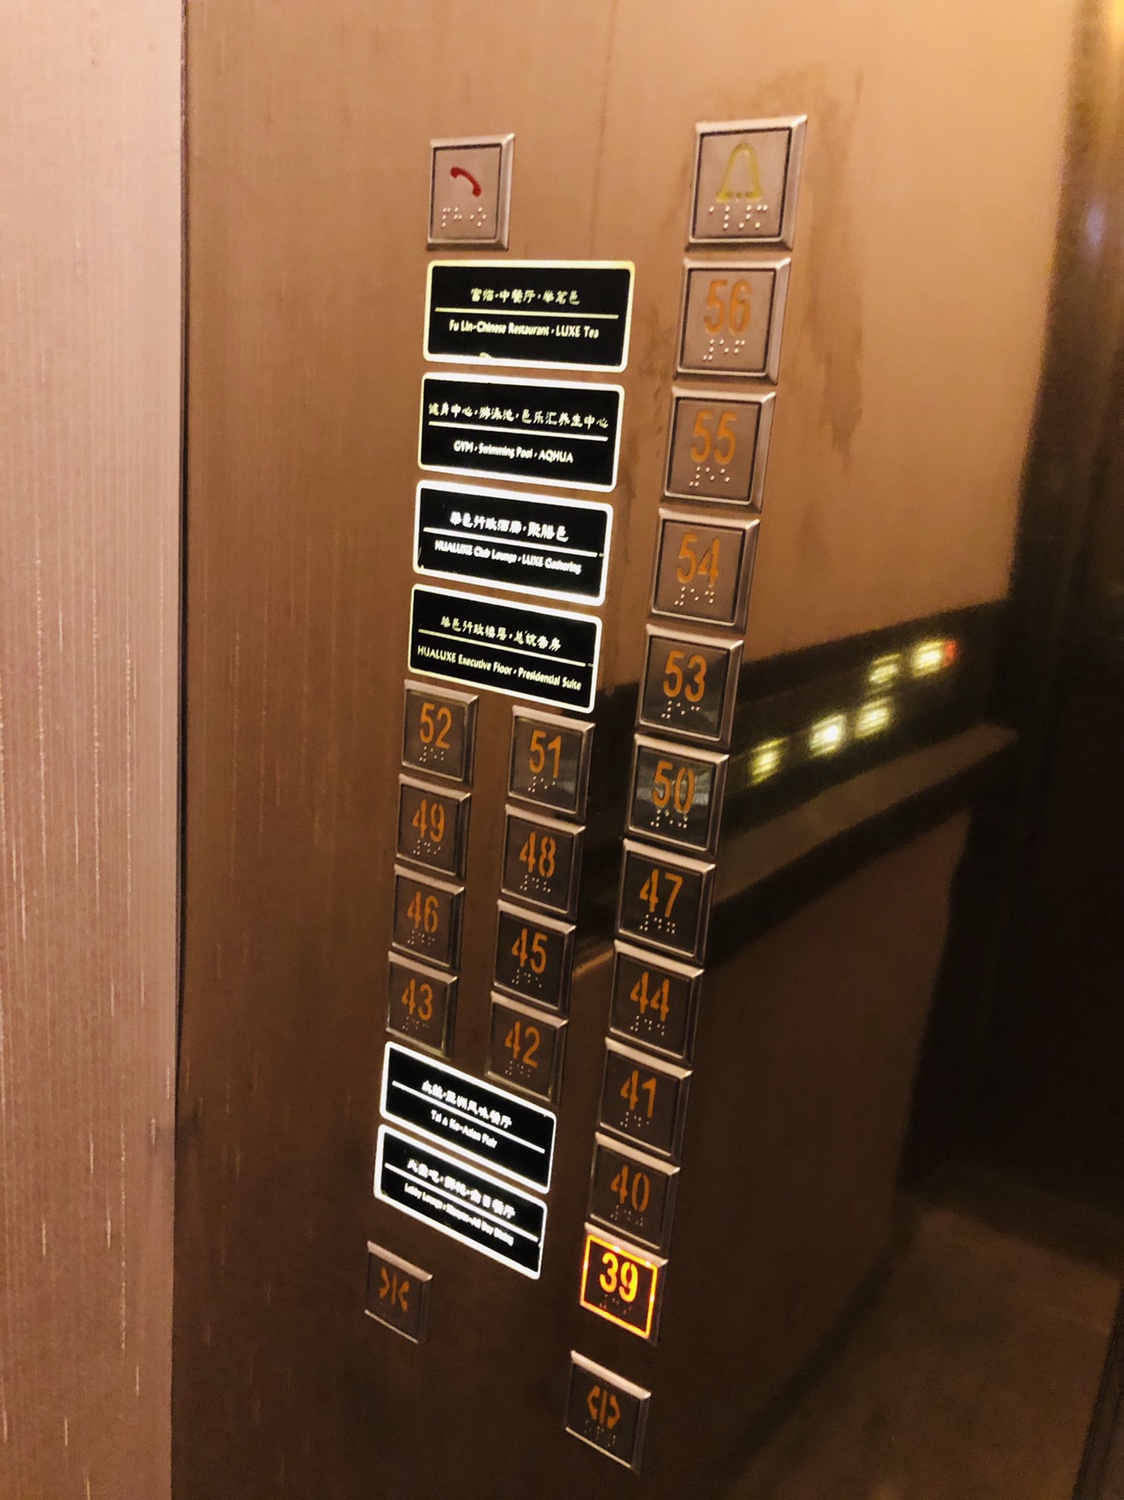 乘坐电梯上楼ci